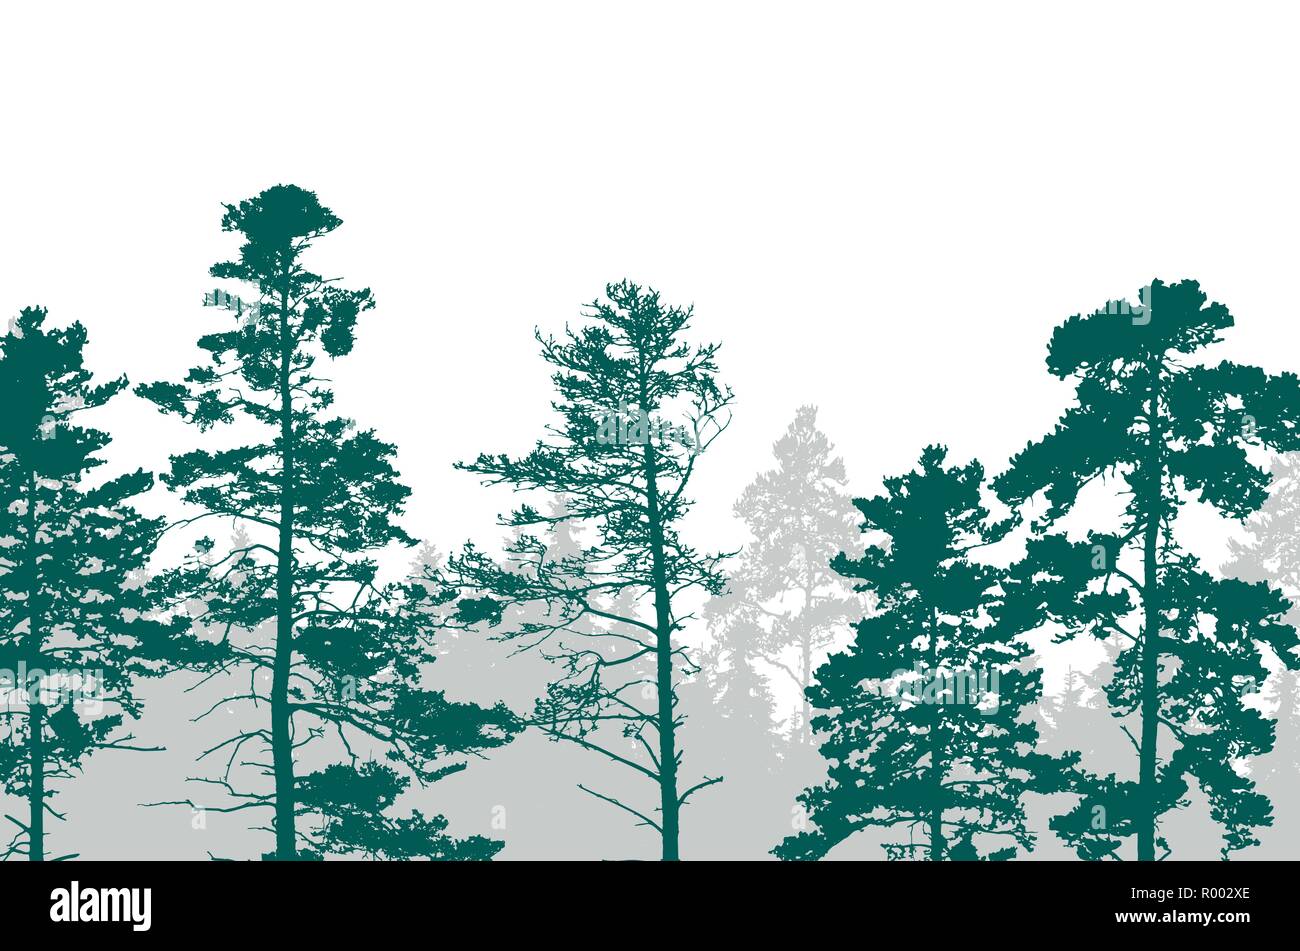 Realistische Darstellung eines grünen Wald mit Nadelbäumen mit zwei Schichten und Platz für Text auf weißem Hintergrund-Vektor Stock Vektor